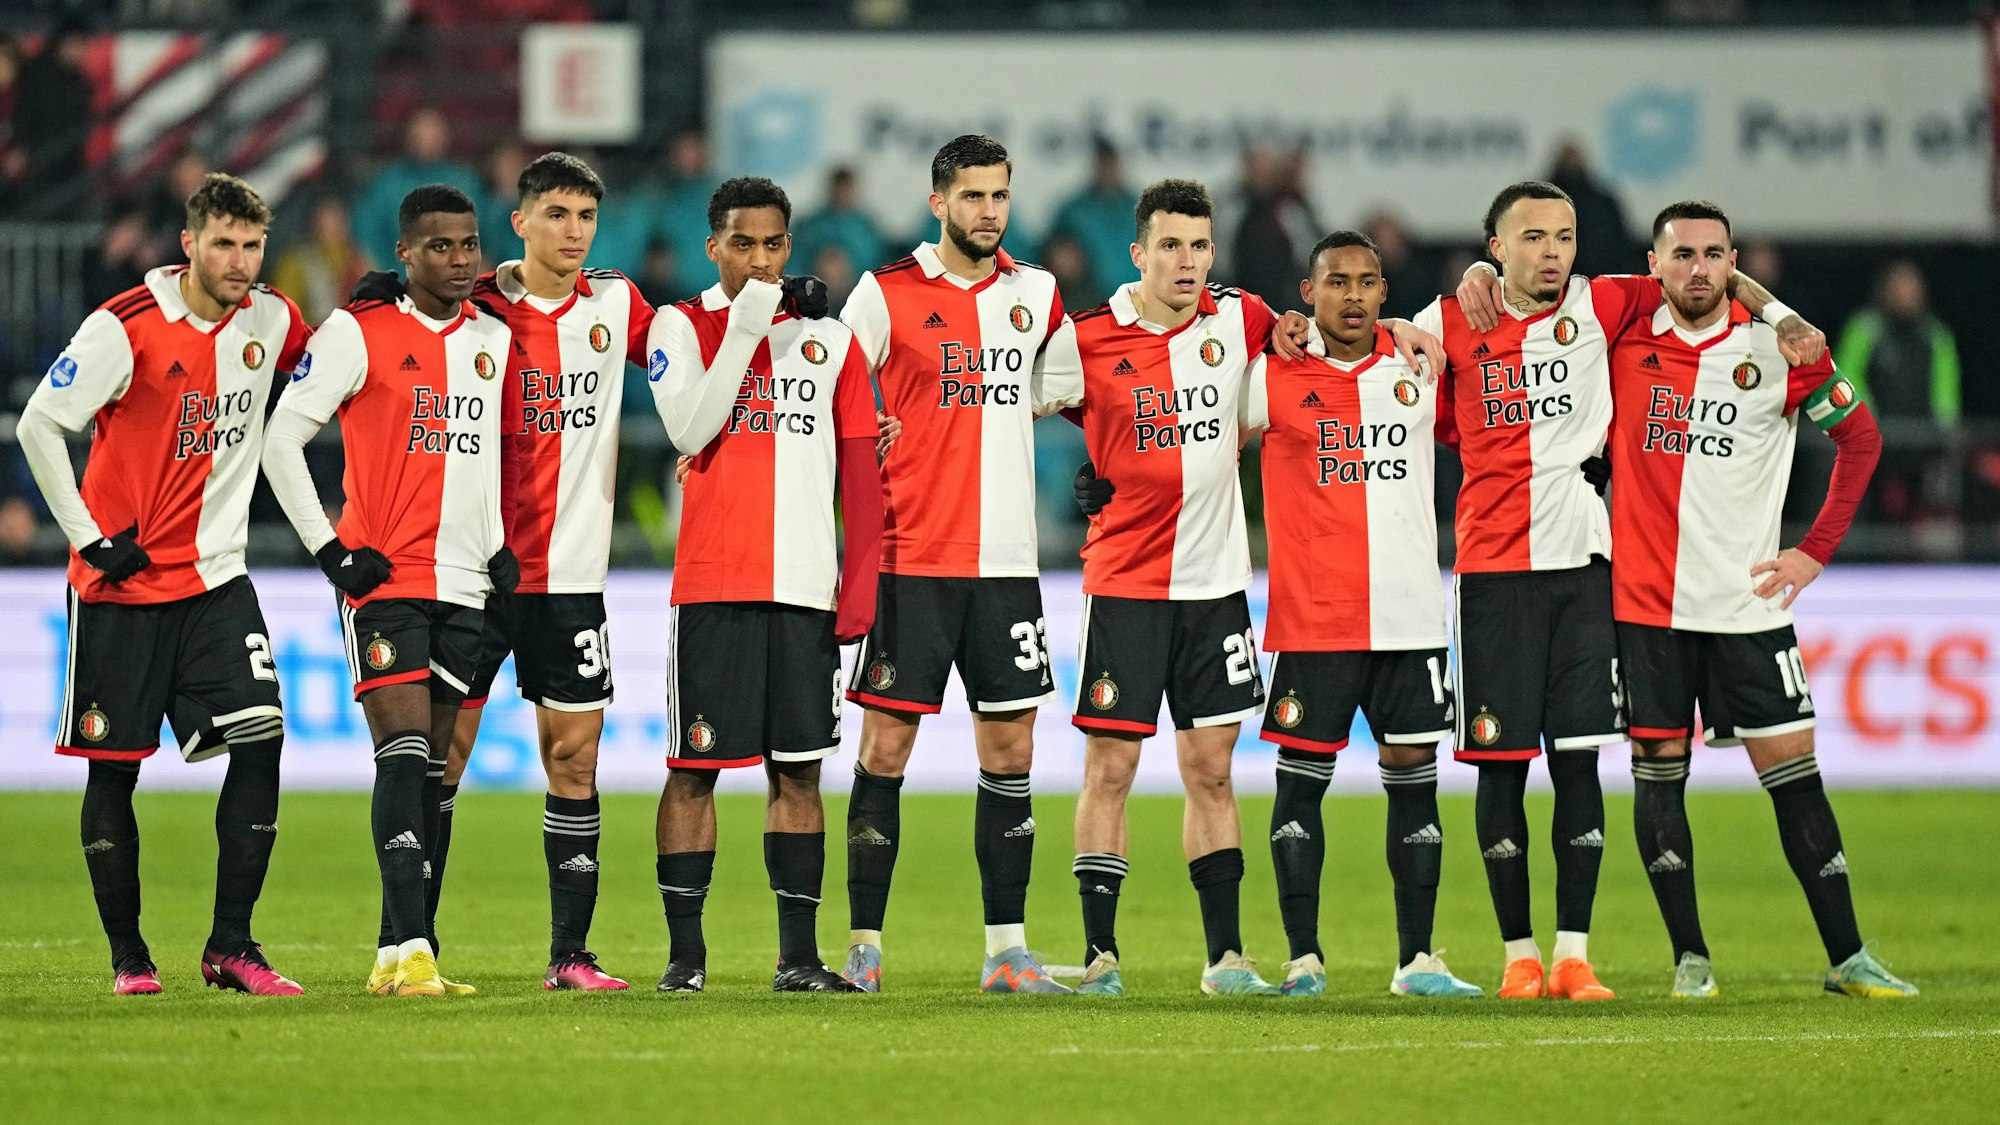 Das Team von Feyenoord Rotterdam im Elfmeterschießen.